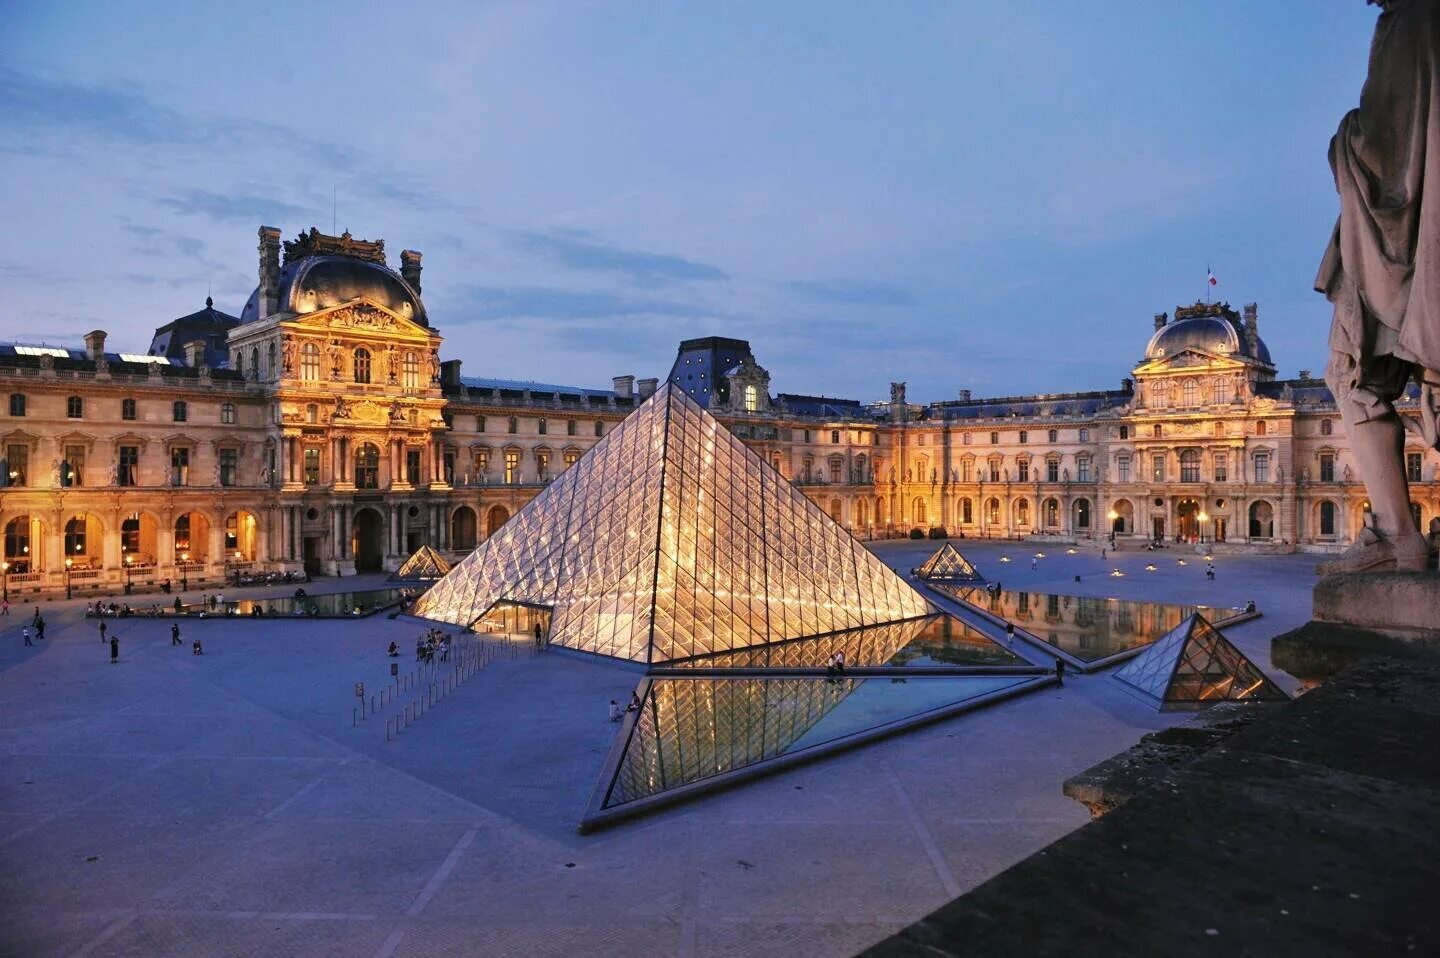 Musee louvre. Музеи. Лувр. Париж. Лувр Франция. Пирамида Лувра в Париже. Новый Лувр в Париже.